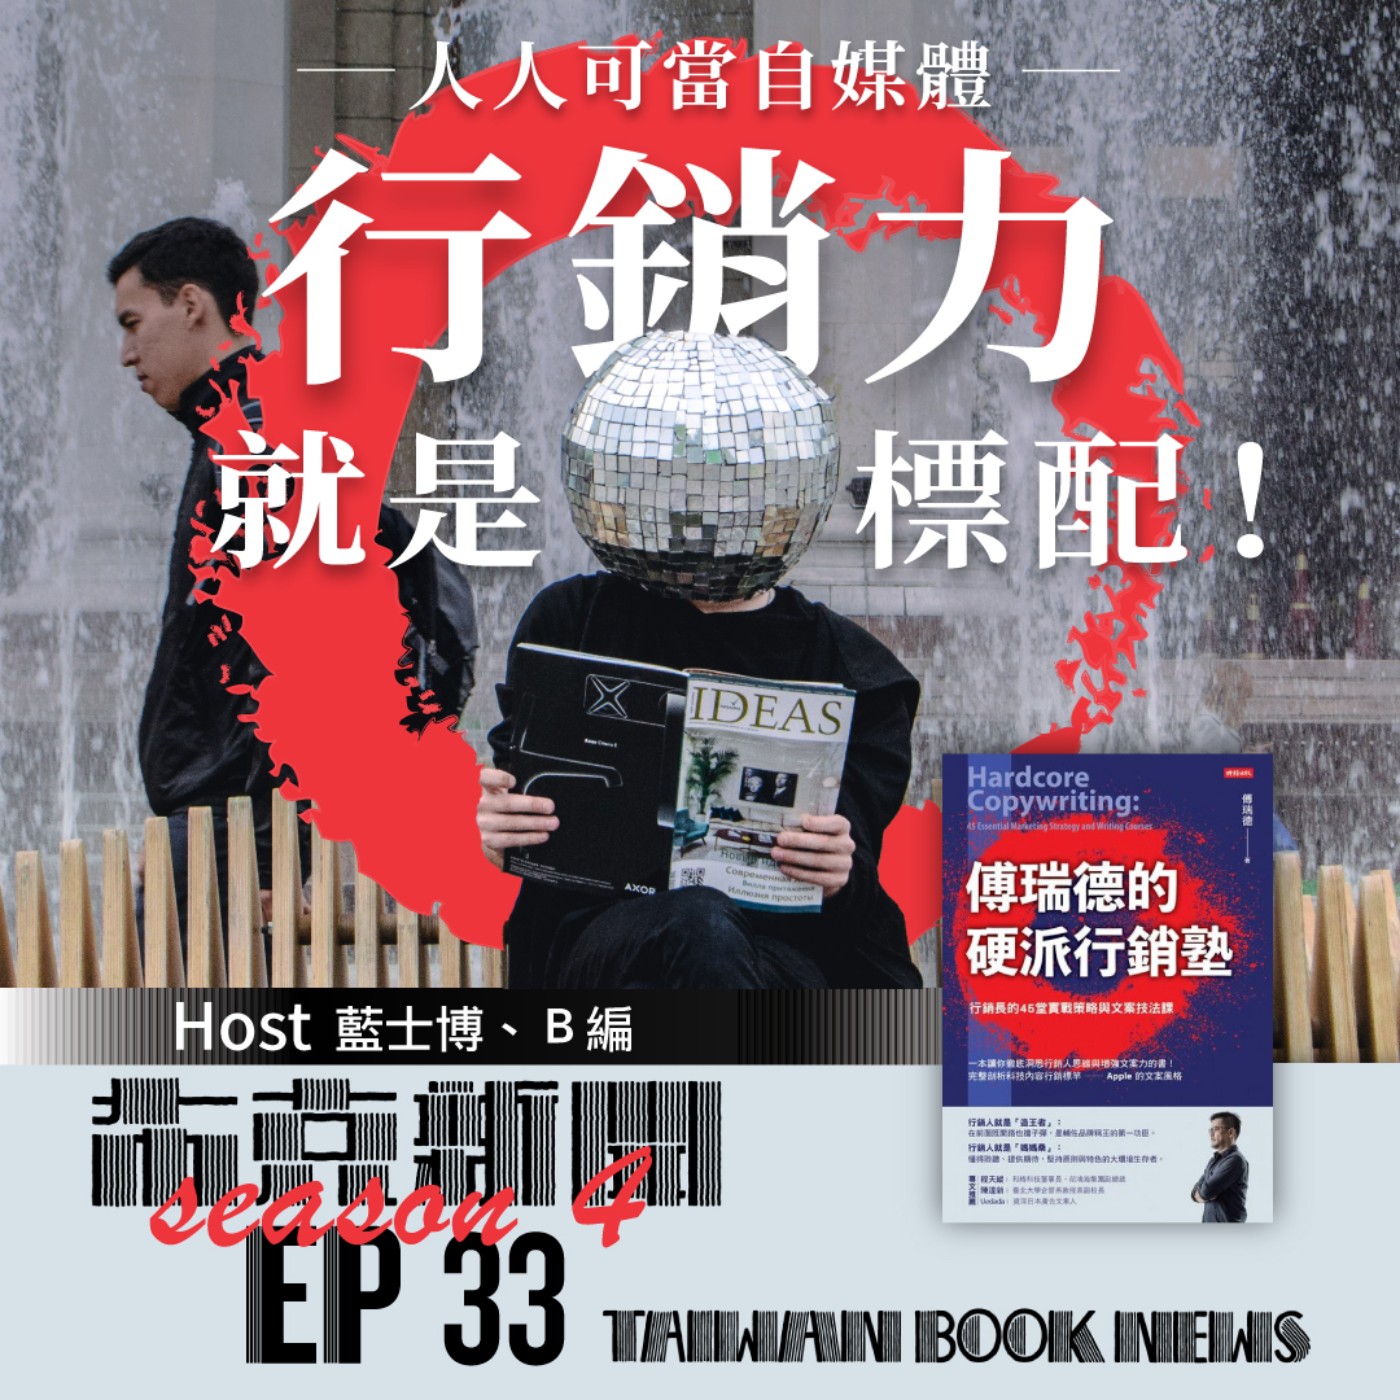 布克新聞 Taiwan Book News S4EP33：人人可當自媒體，行銷力就是標配！